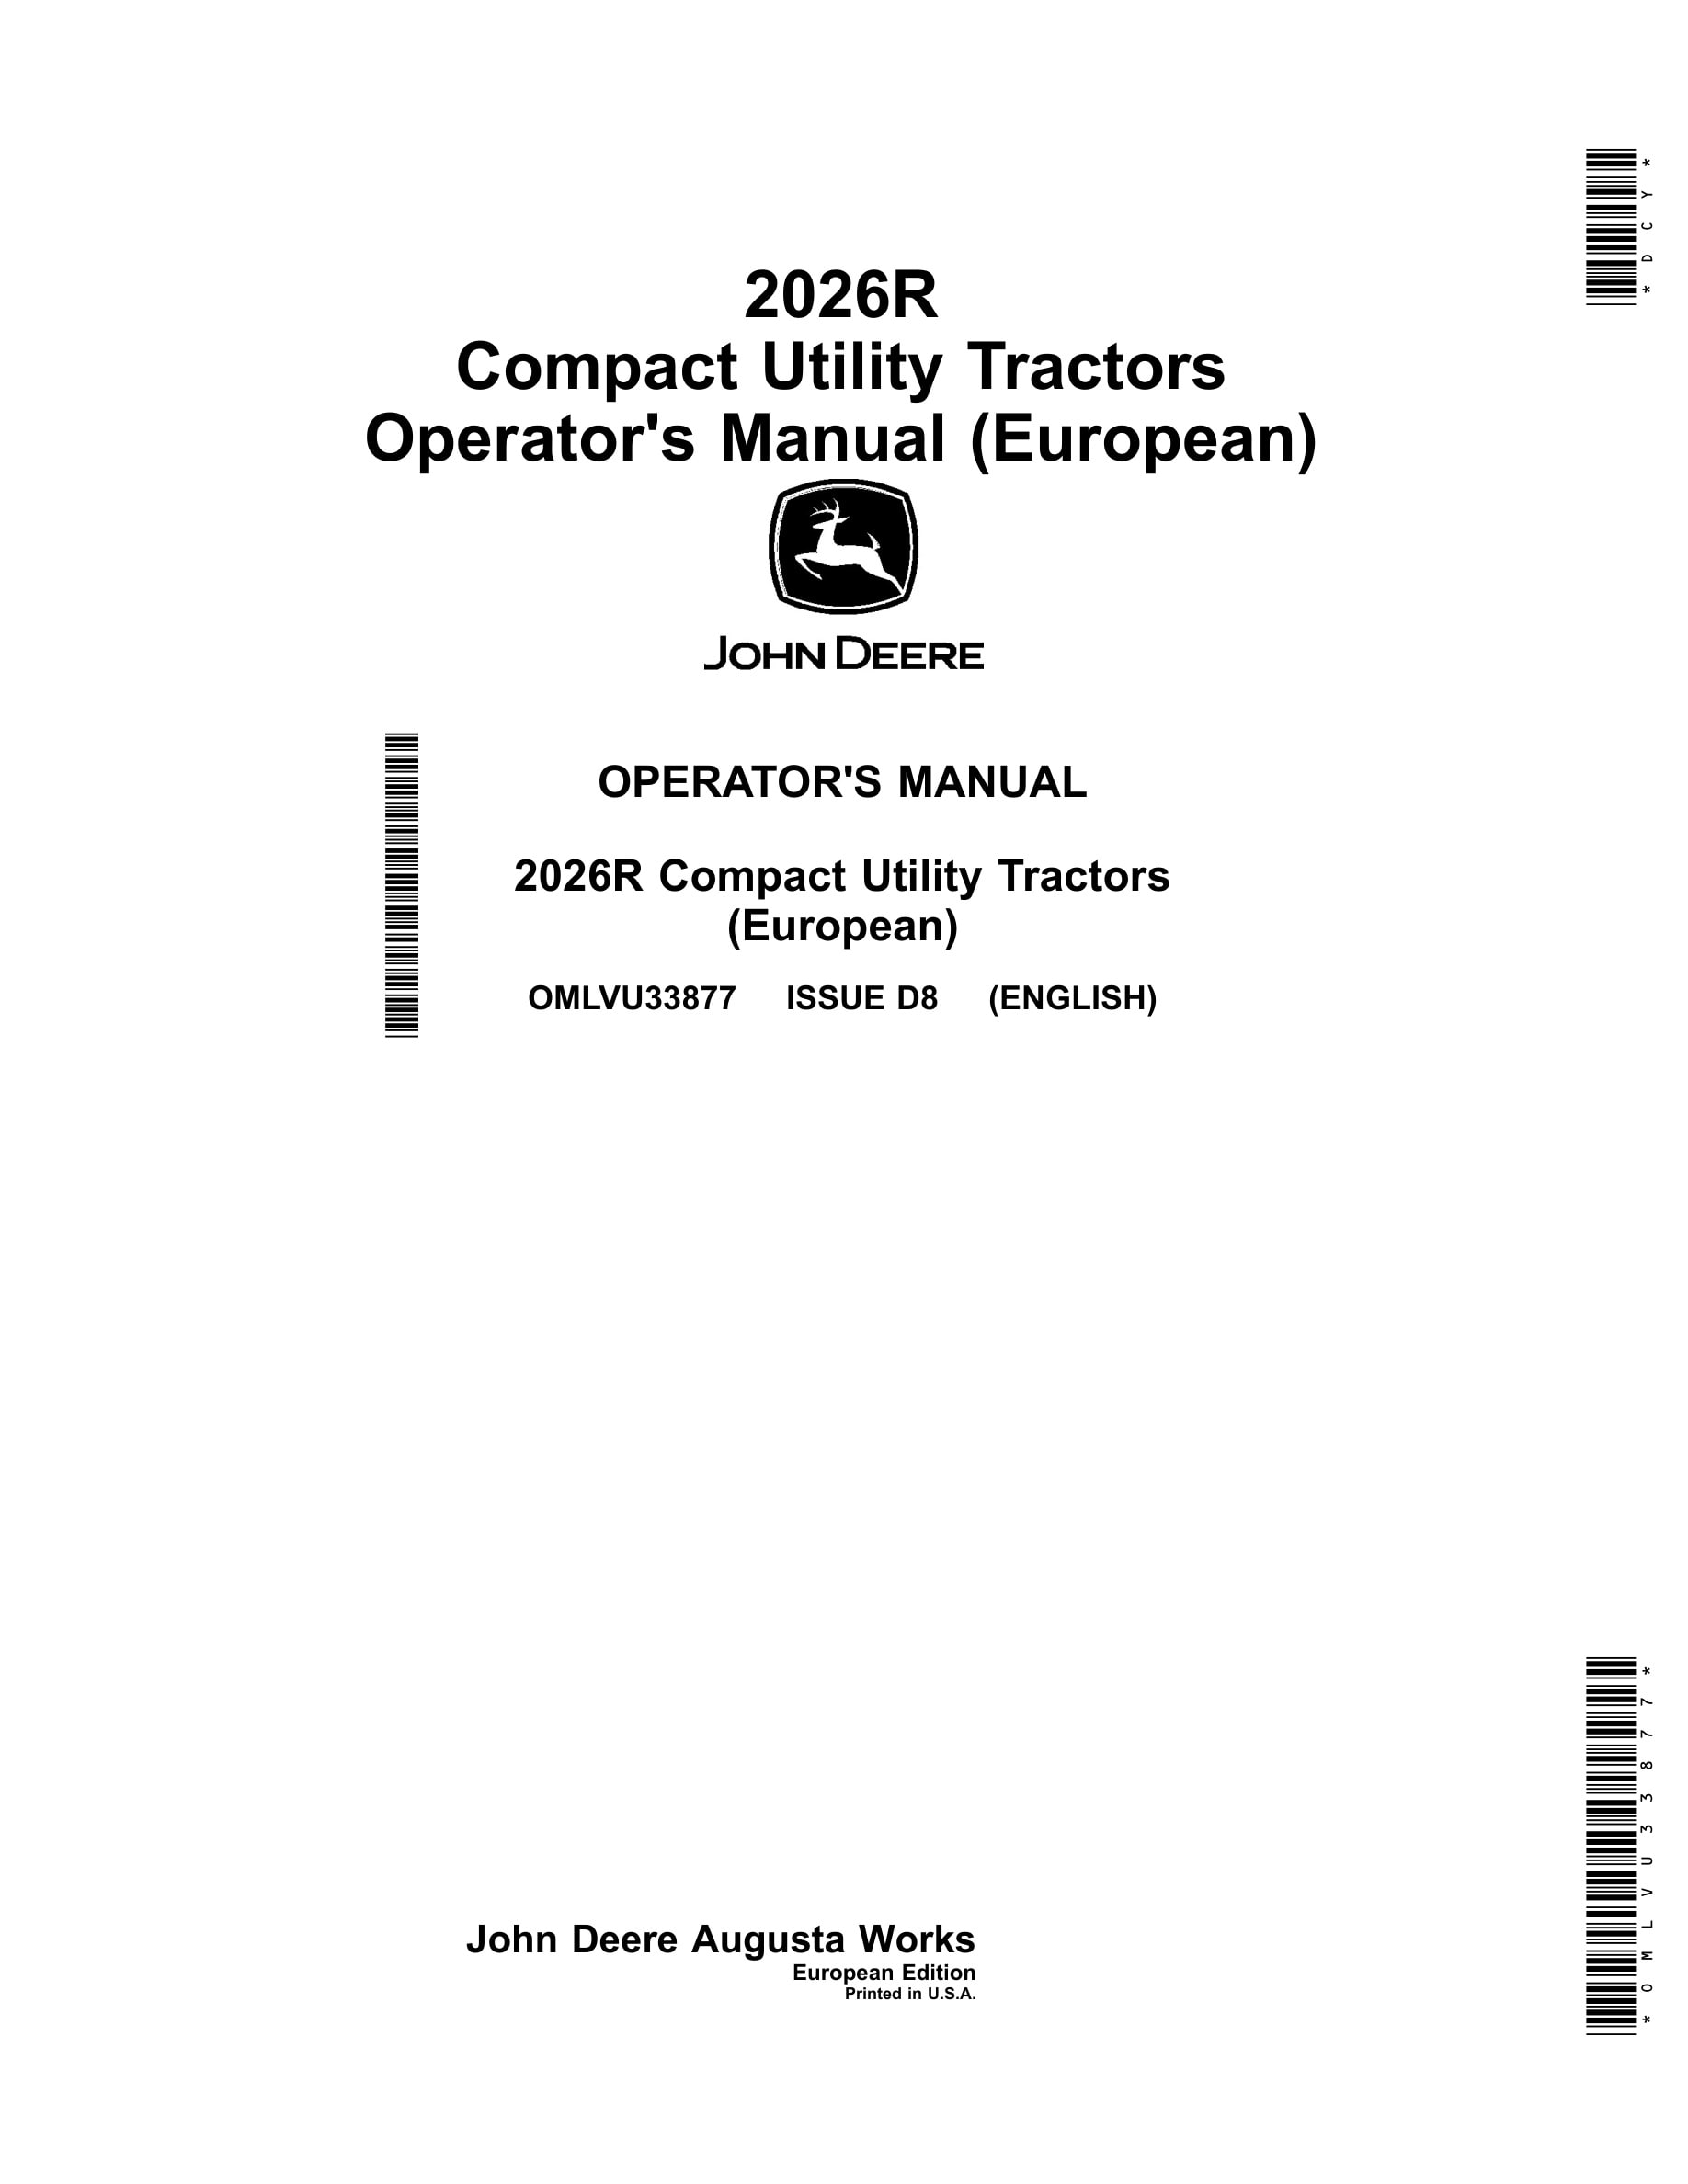 John Deere 2026r Compact Utility Tractors Operator Manuals OMLVU33877-1